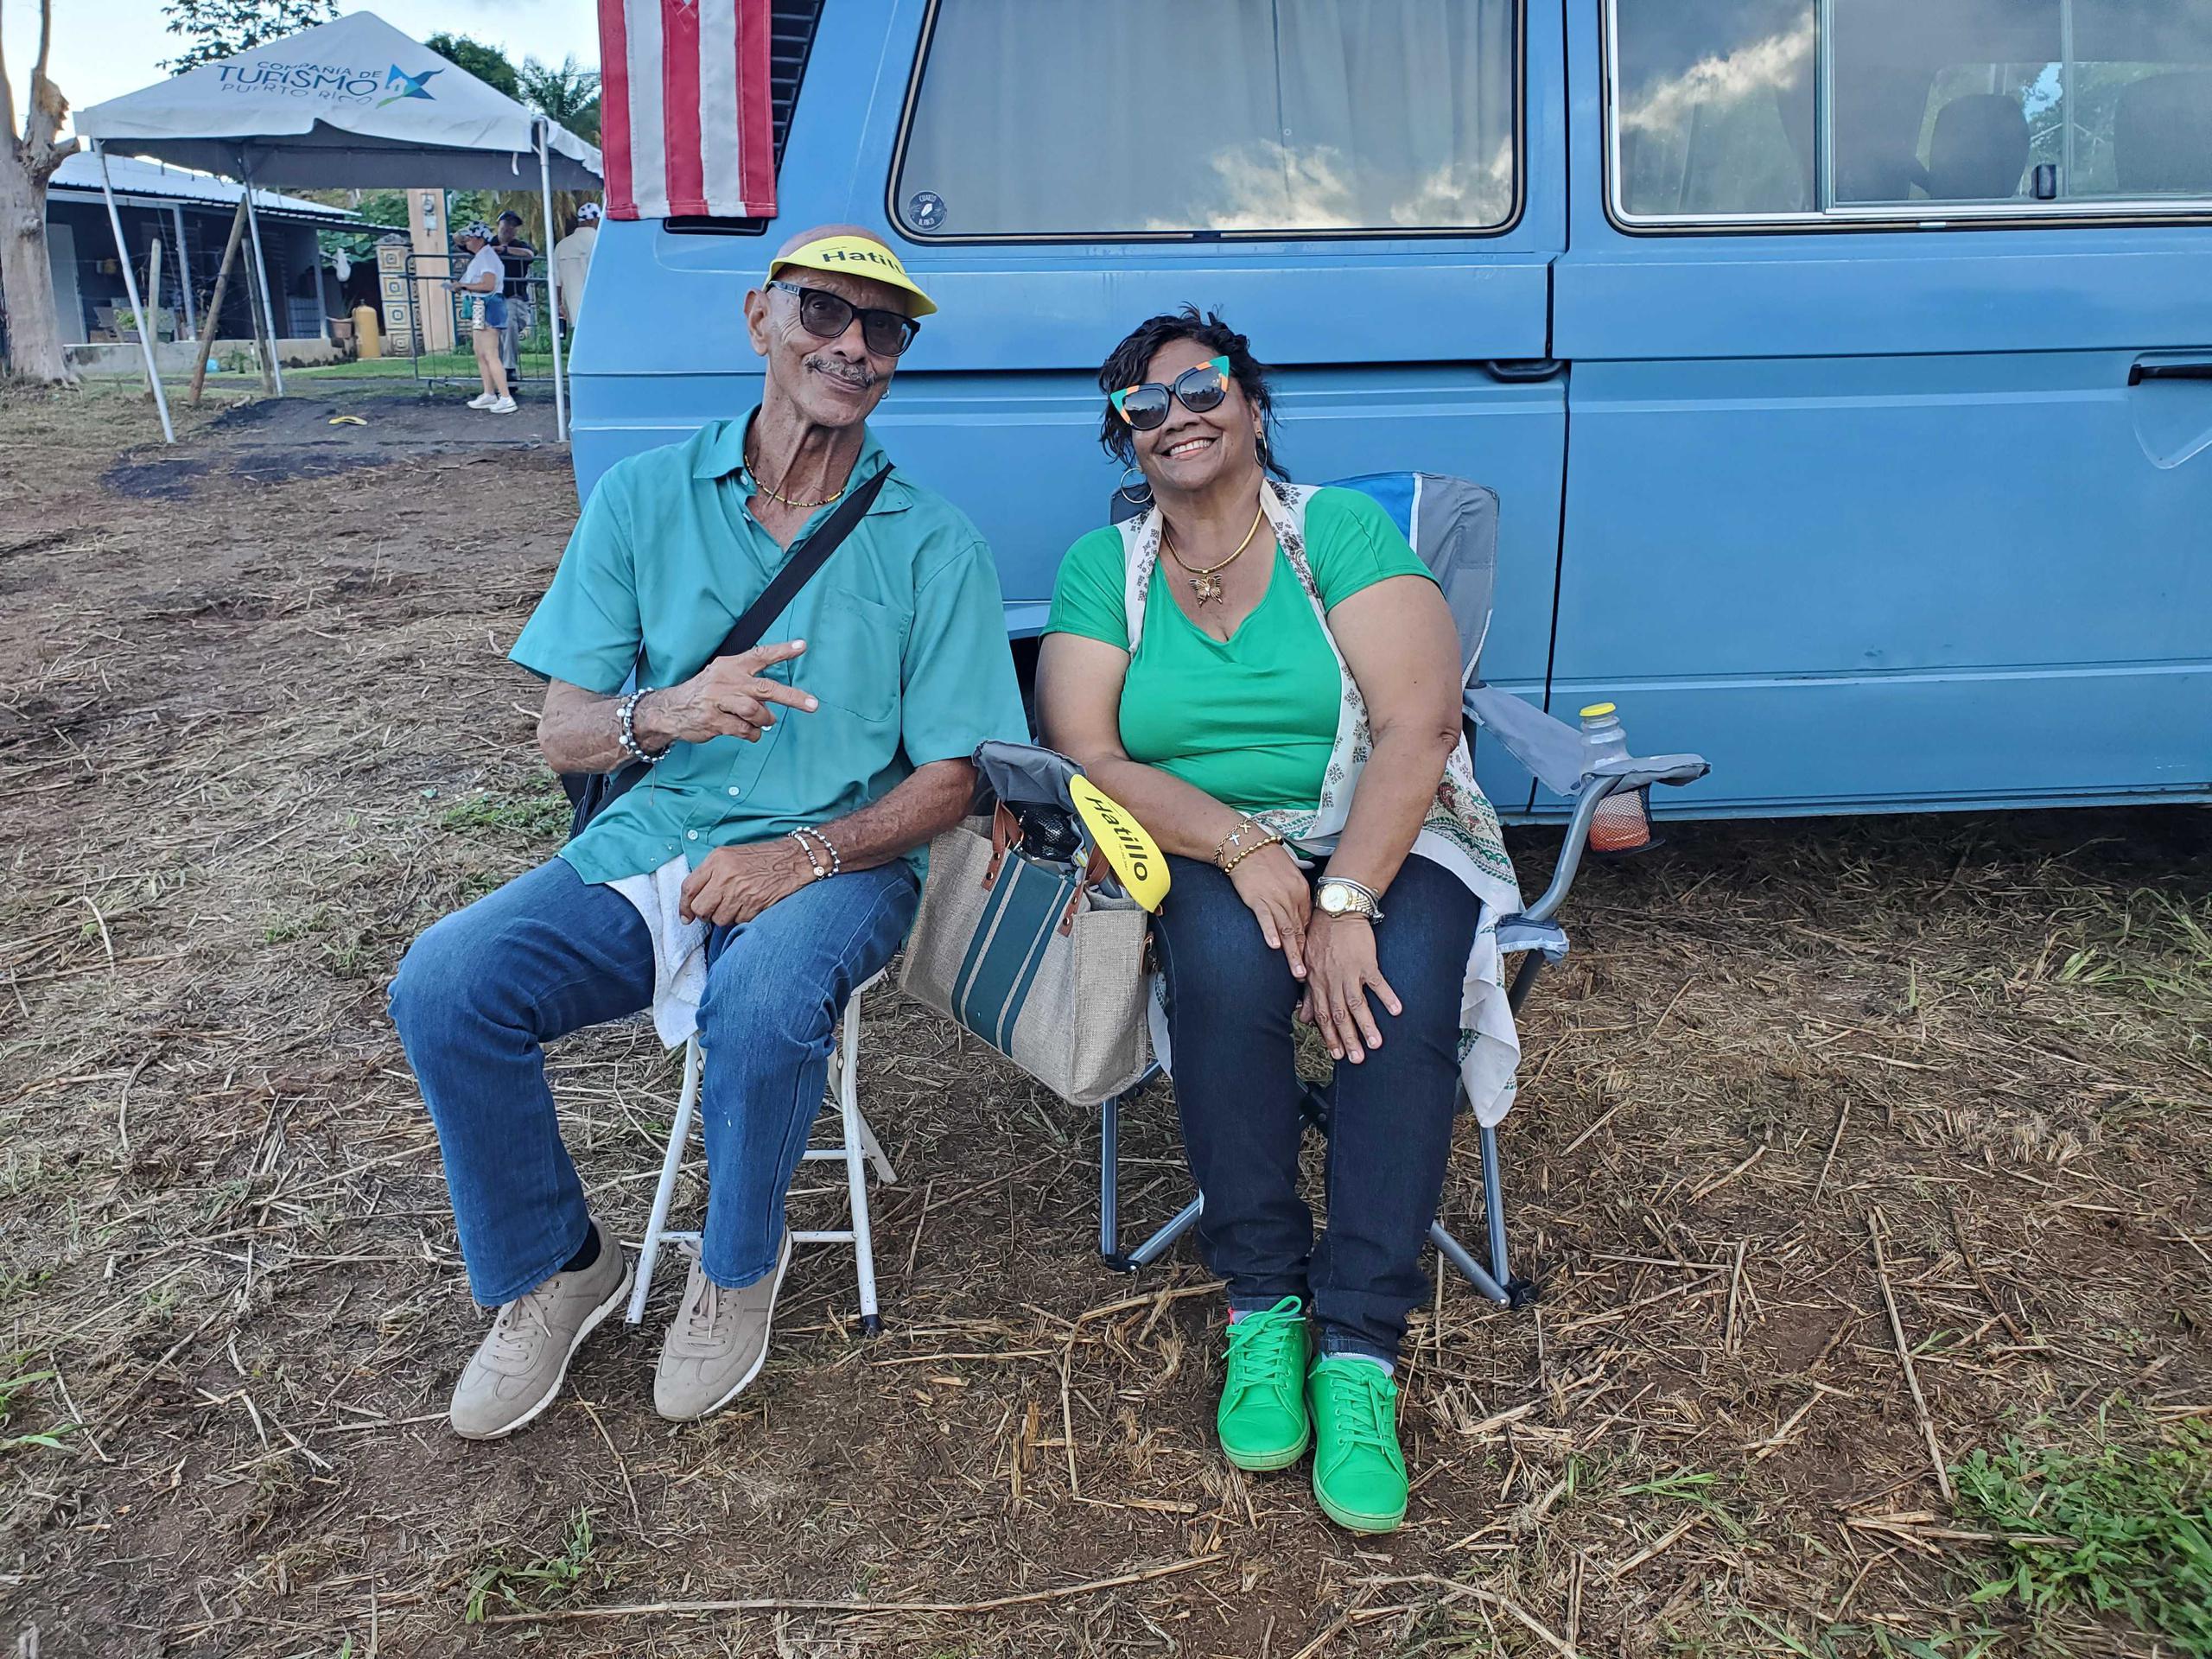 Argilio Villafañe y Gloria Pizarro, residentes de Carolina, llegaron al espectáculo musical que se celebró en el municipio de Hatillo.